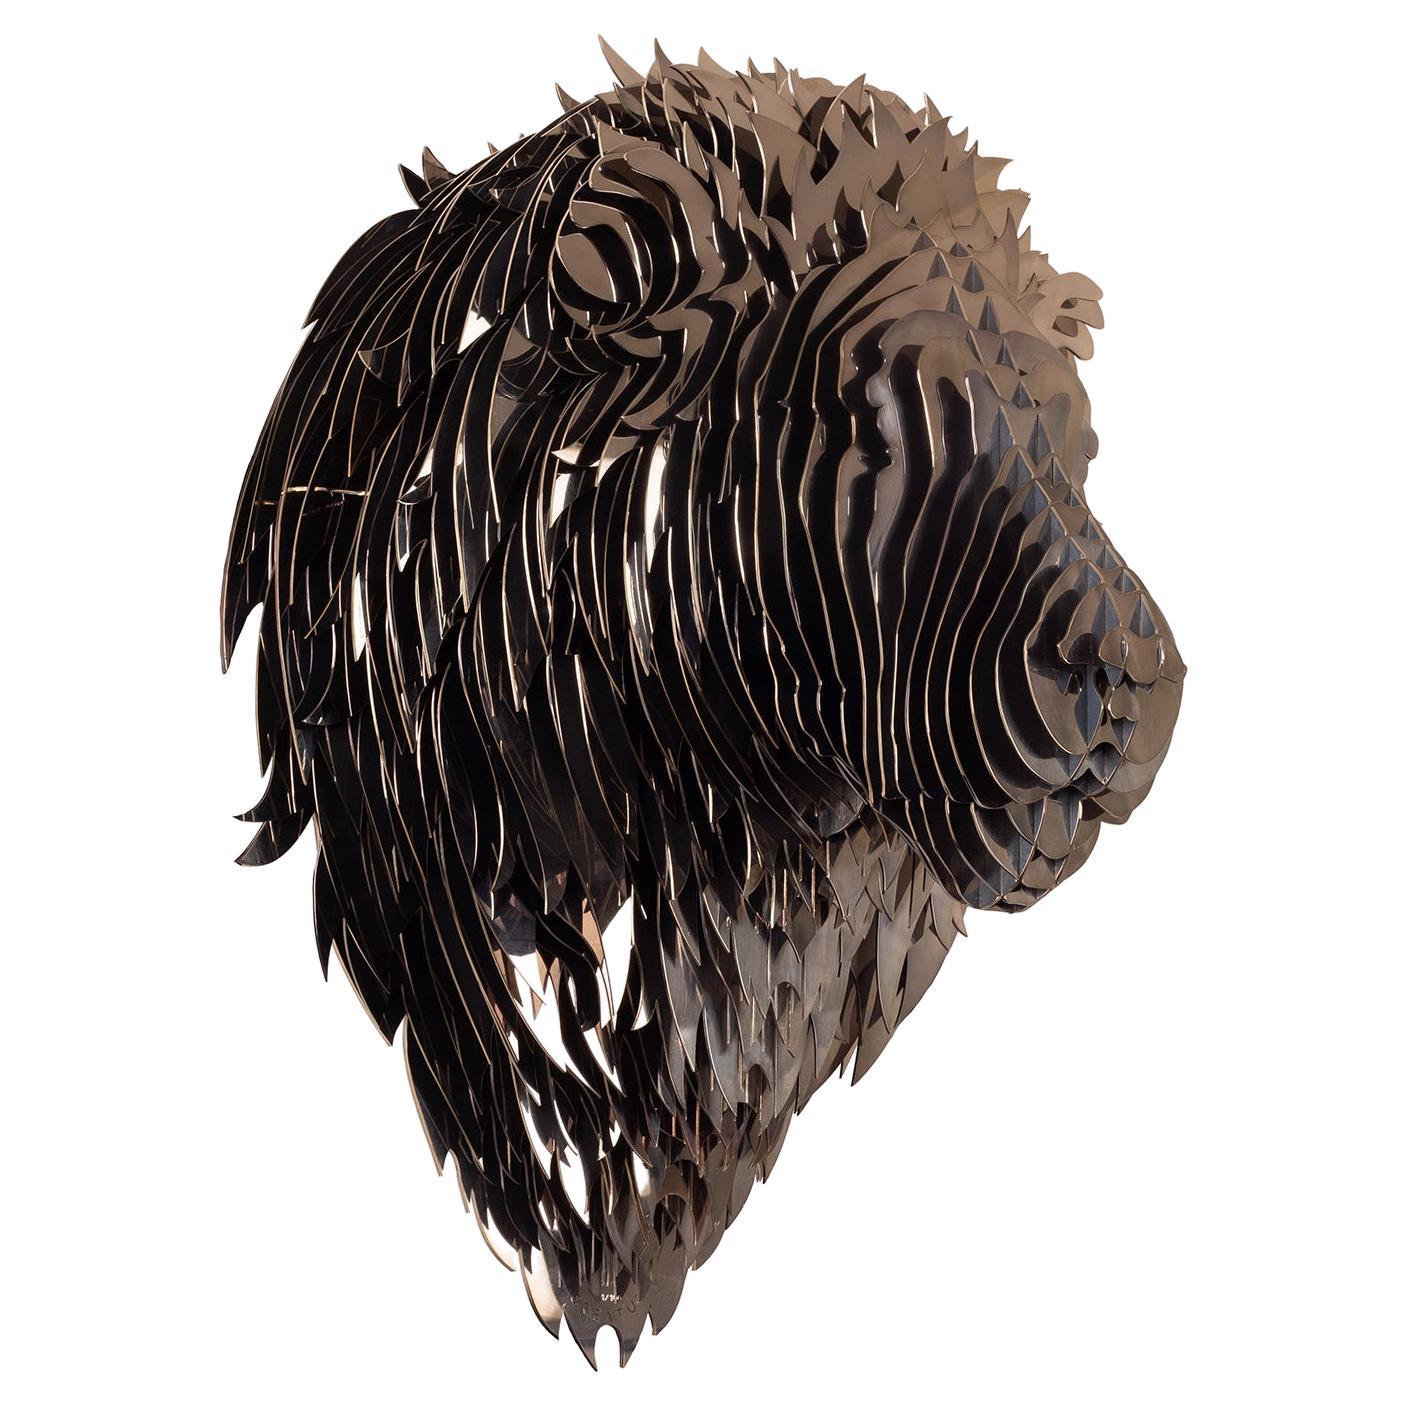 Trophee-Skulptur eines schwarzen Löwen